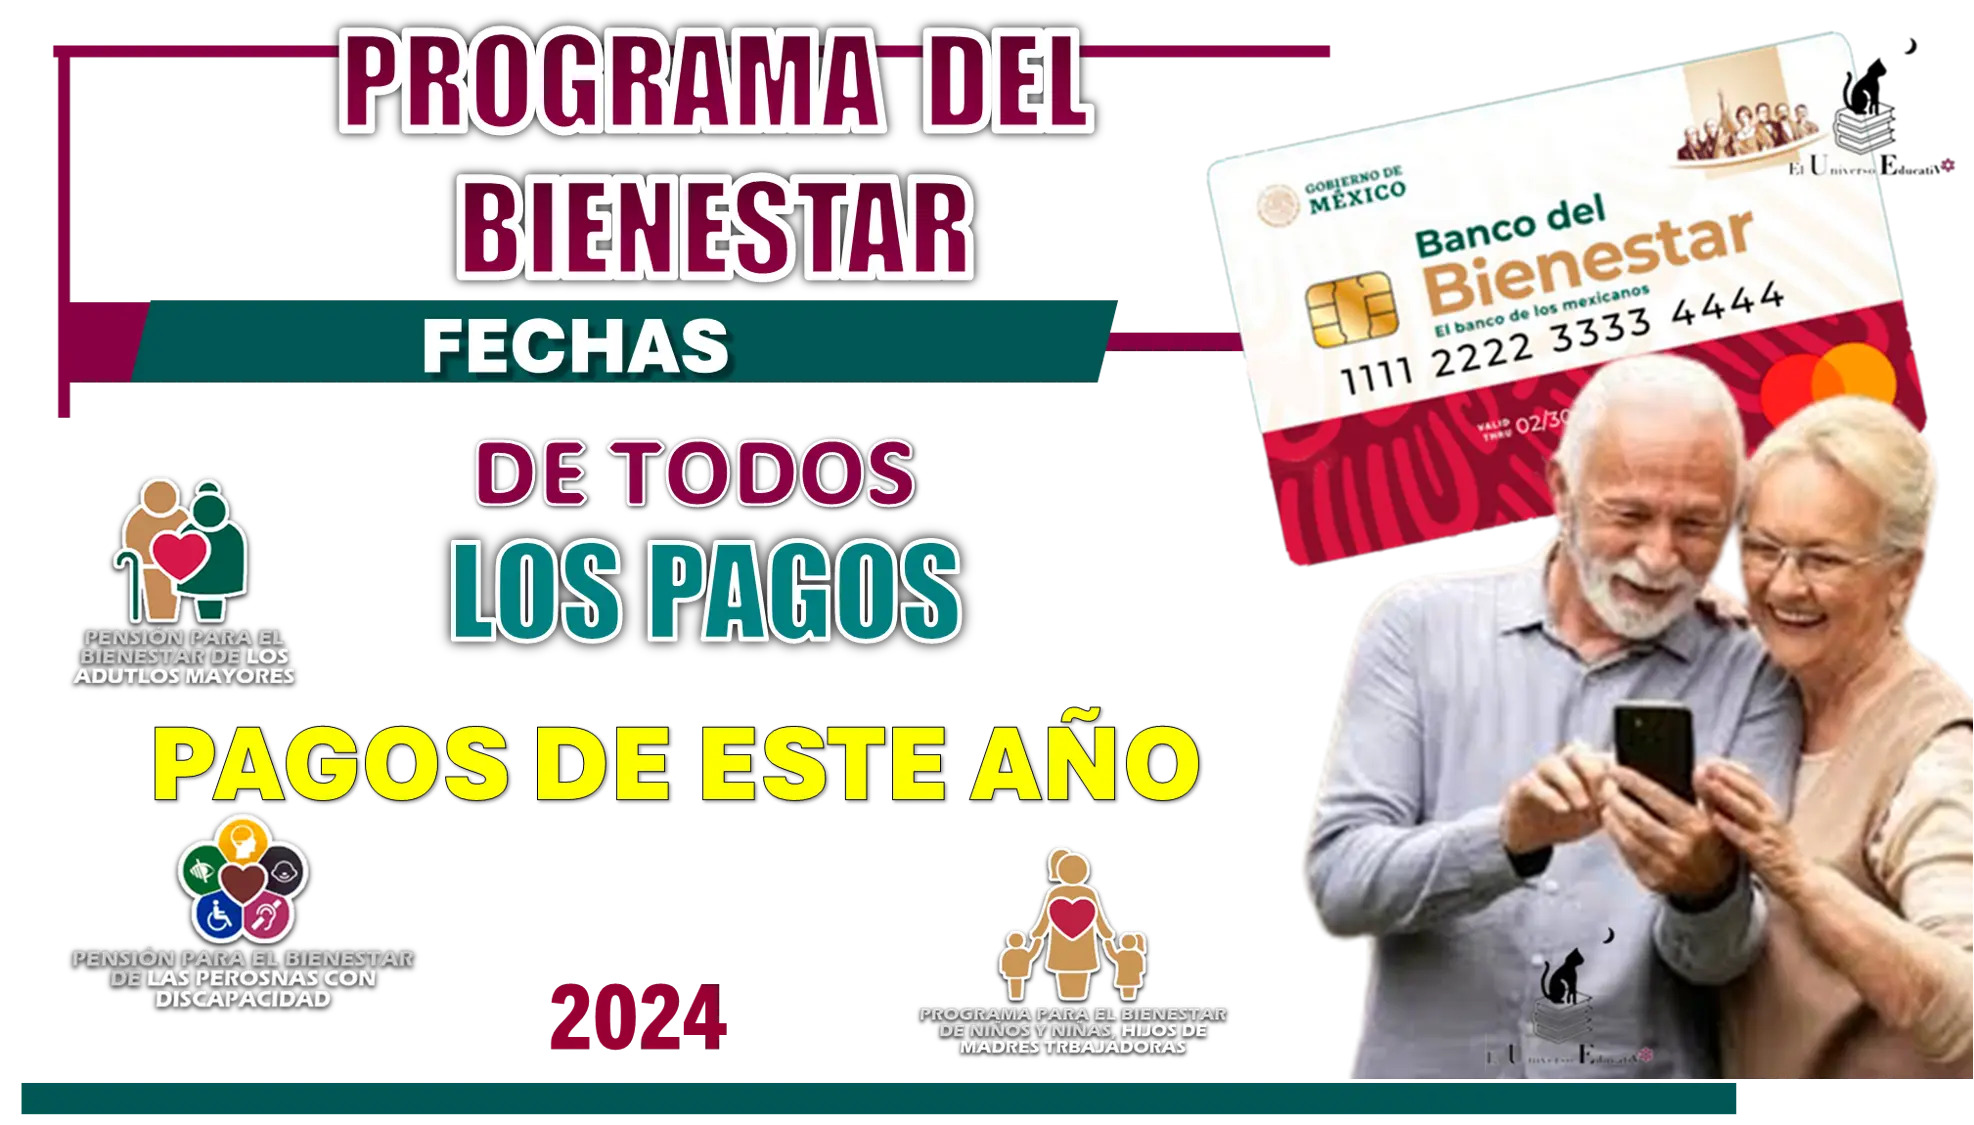 PROGRAMA DEL BIENESTAR | FECHAS DE TODOS LOS PAGOS DE ESTE AÑO 2024